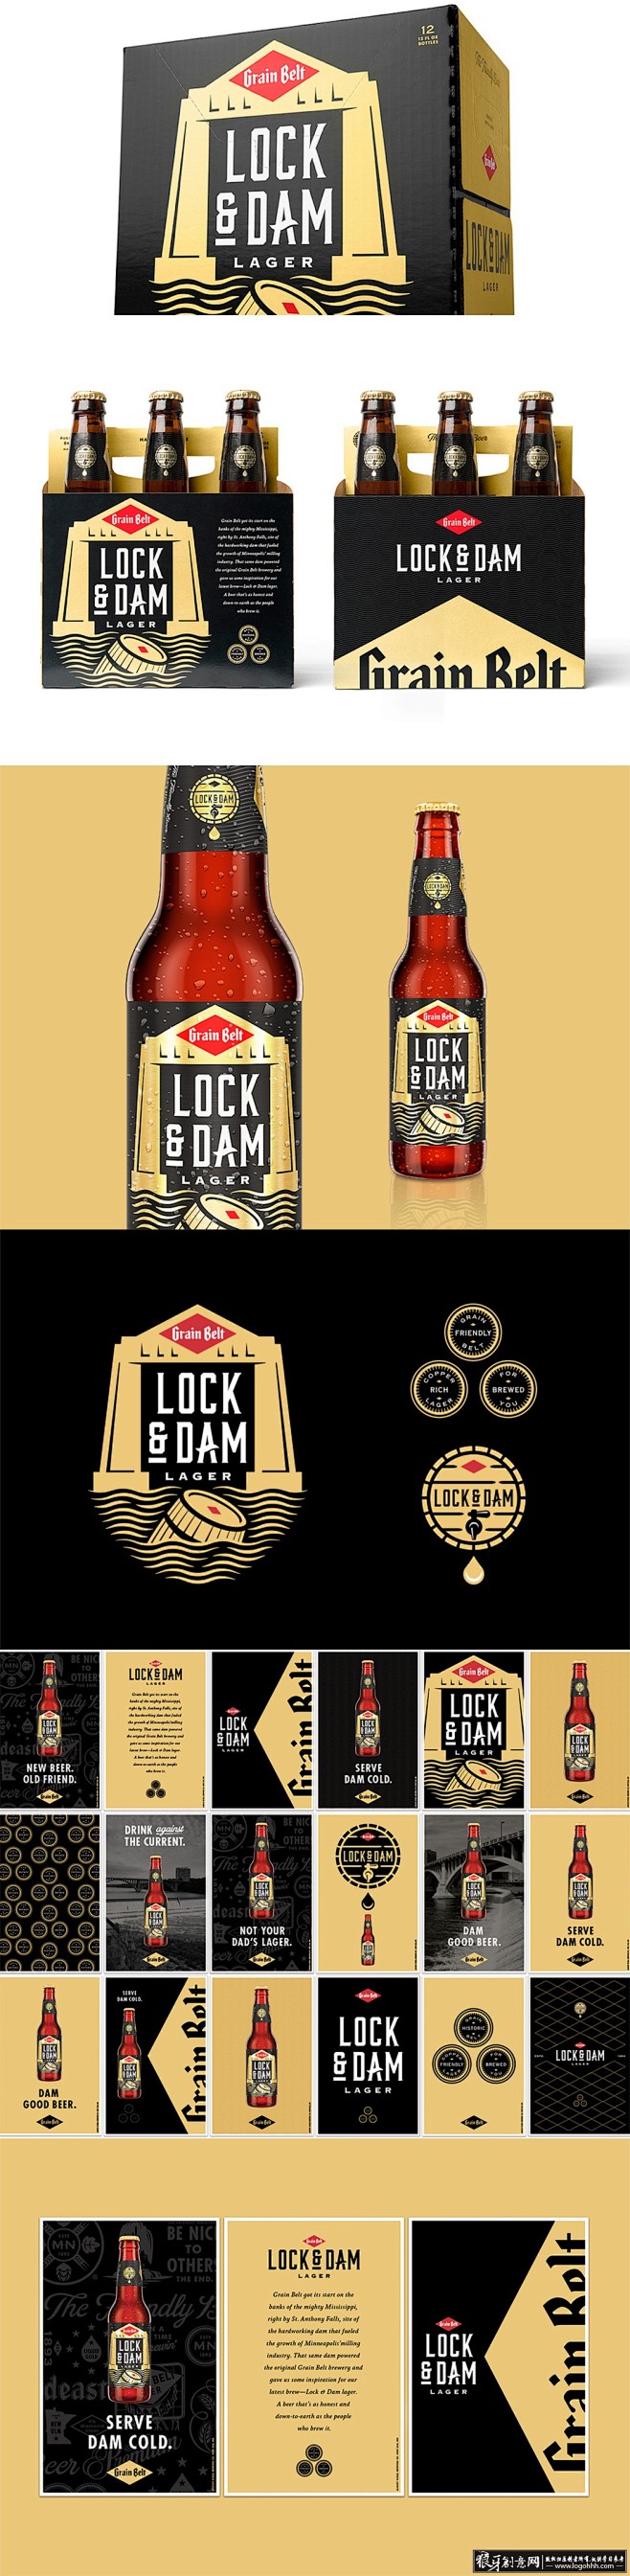 包装设计灵感 锁和大坝啤酒 创意啤酒包装...